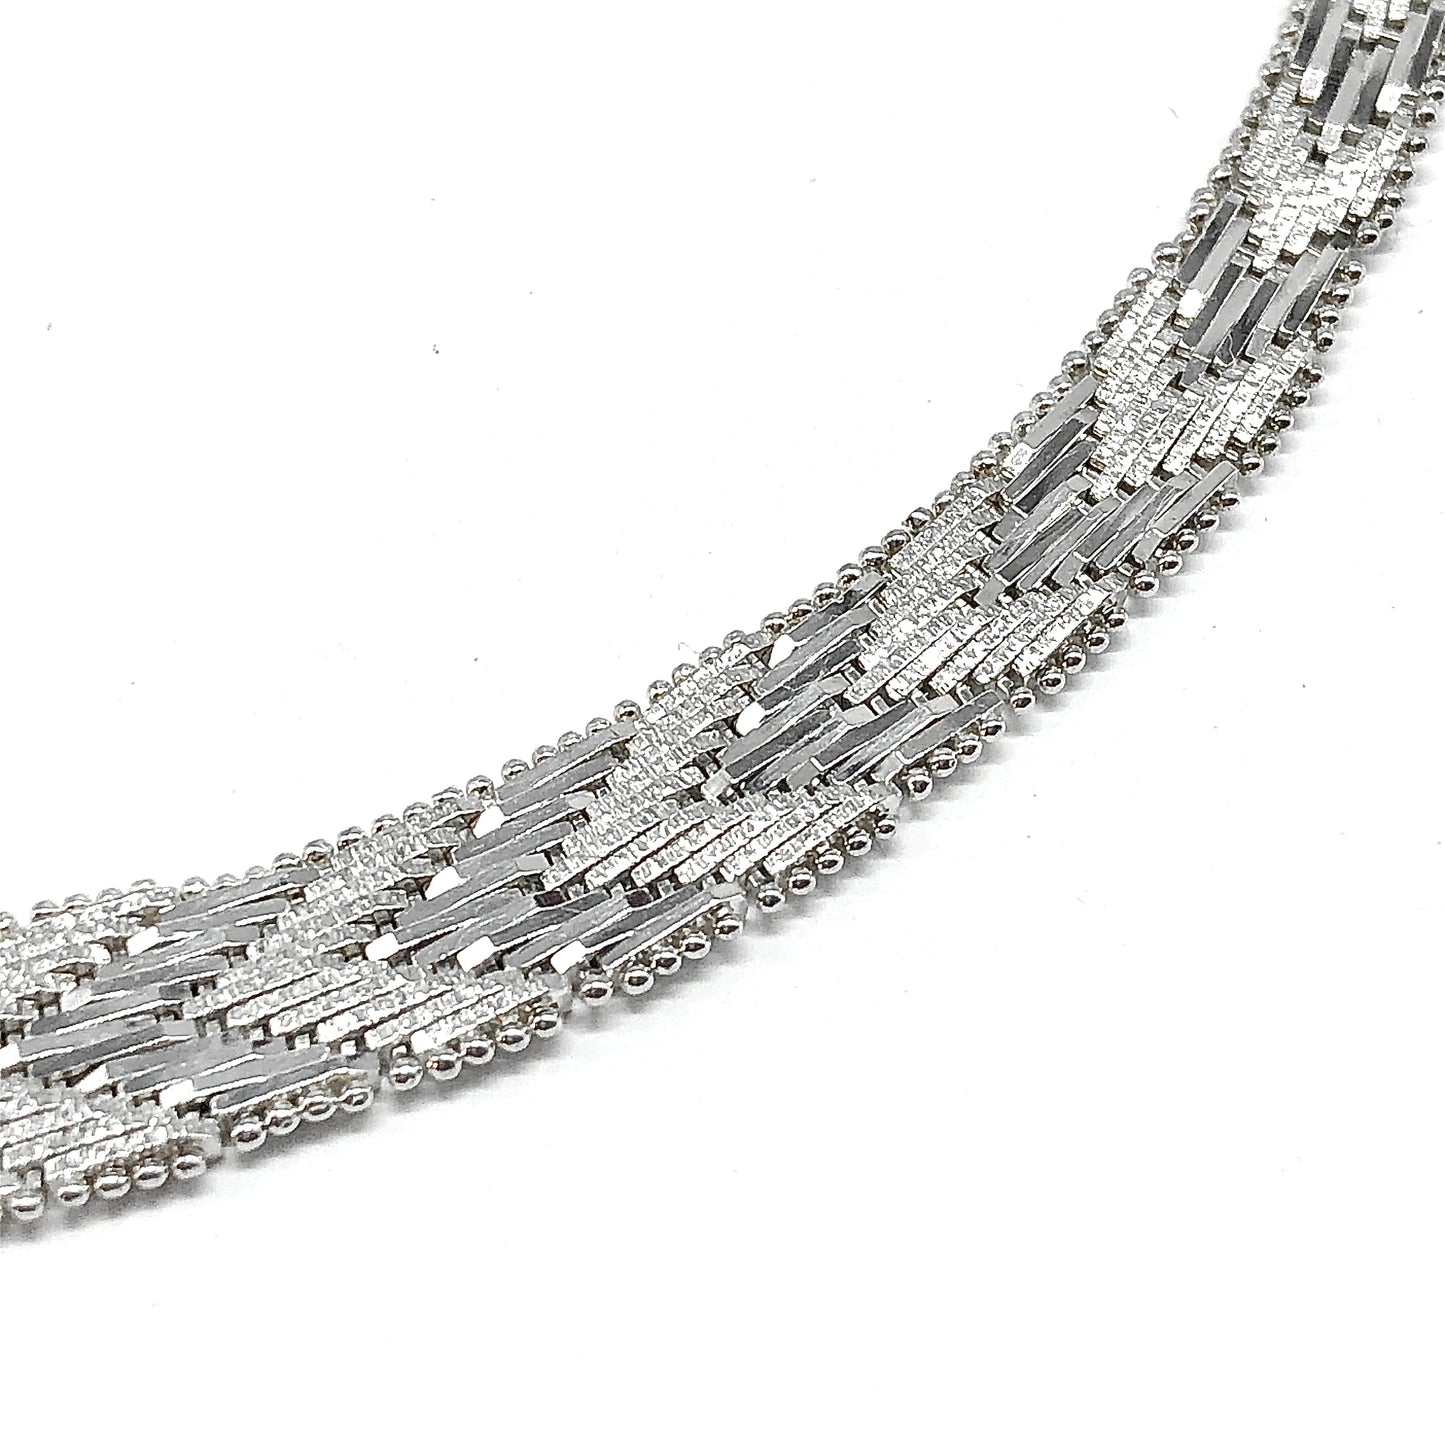 Necklace Sterling Silver Riccio Chevron Herringbone Choker Collar